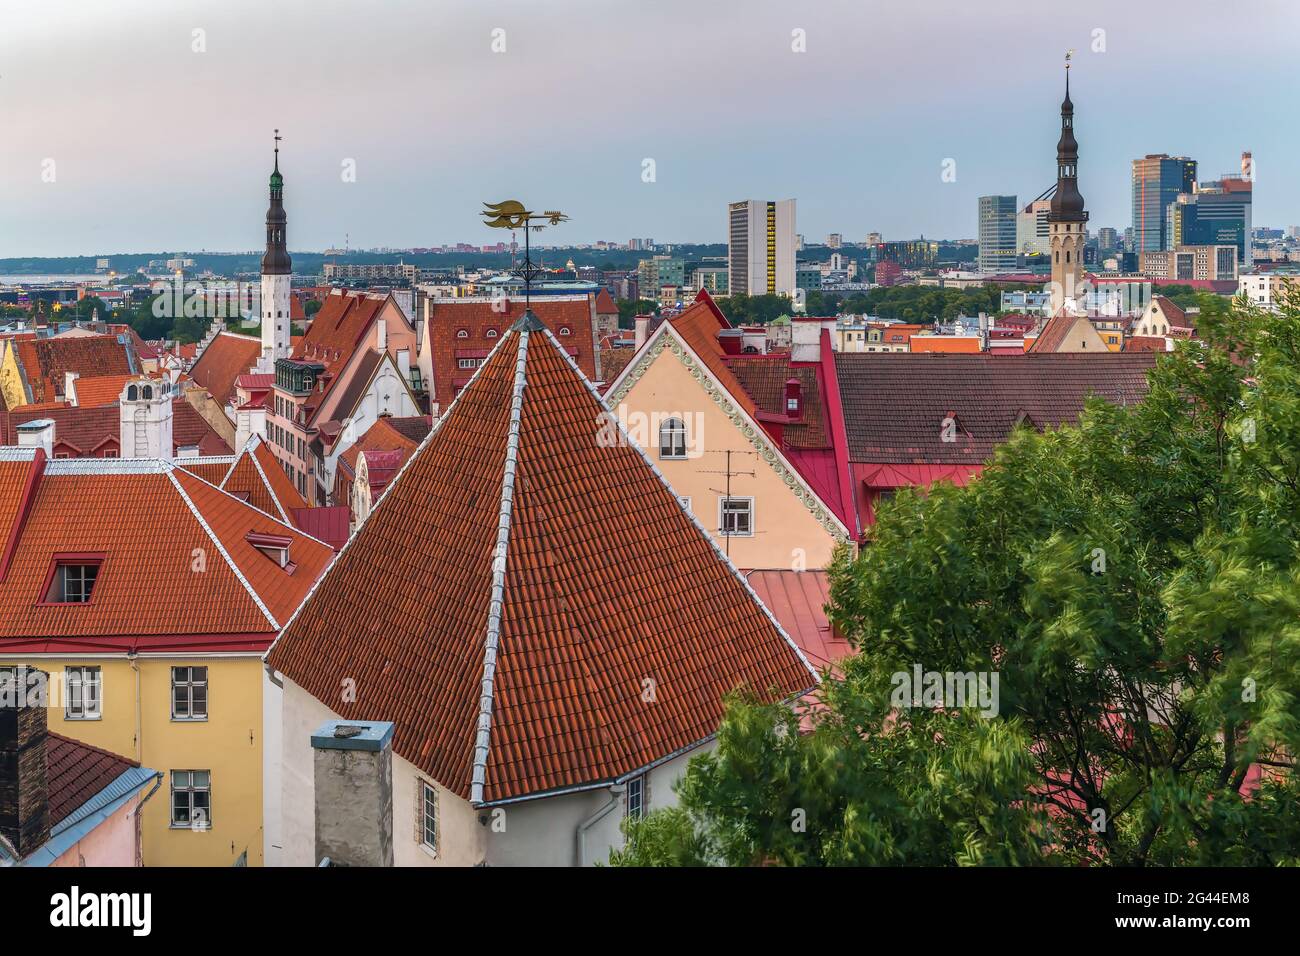 View of Tallinn, Estonia Stock Photo